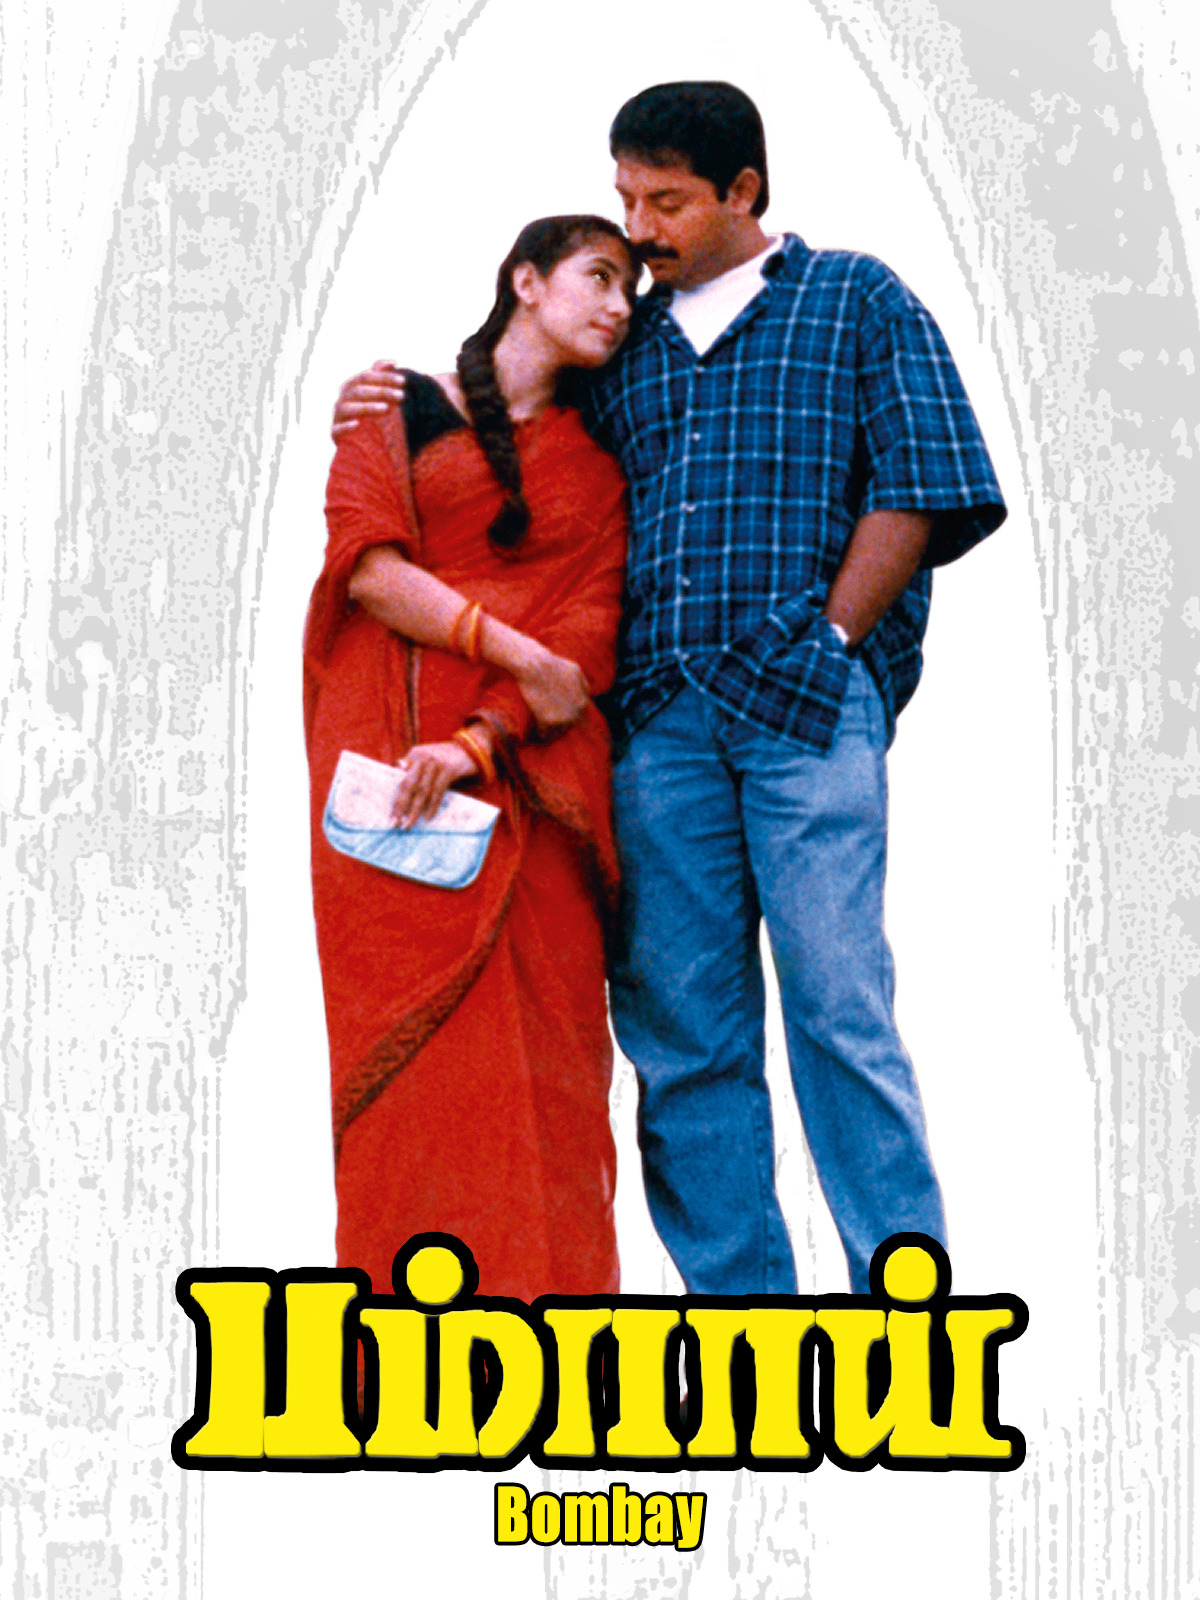 Bombay-1995-HD-Poster.jpeg